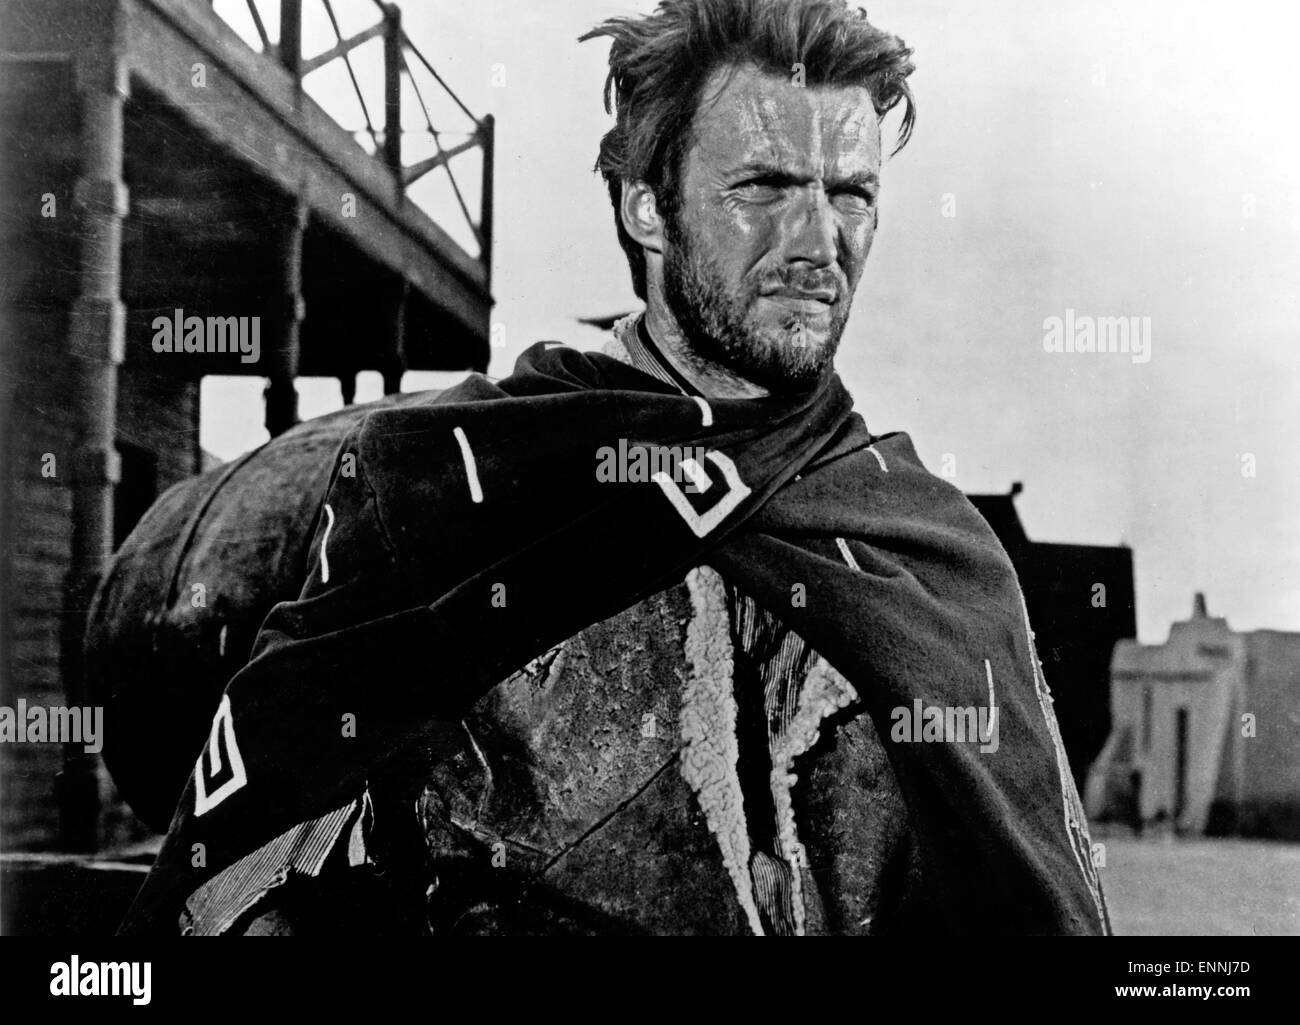 Der Amerikanische Schauspieler Clint Eastwood in Seiner Paraderolle Im Western-Genre, 1960er Jahre. US-amerikanischer Schauspieler Clint Eastwoo Stockfoto